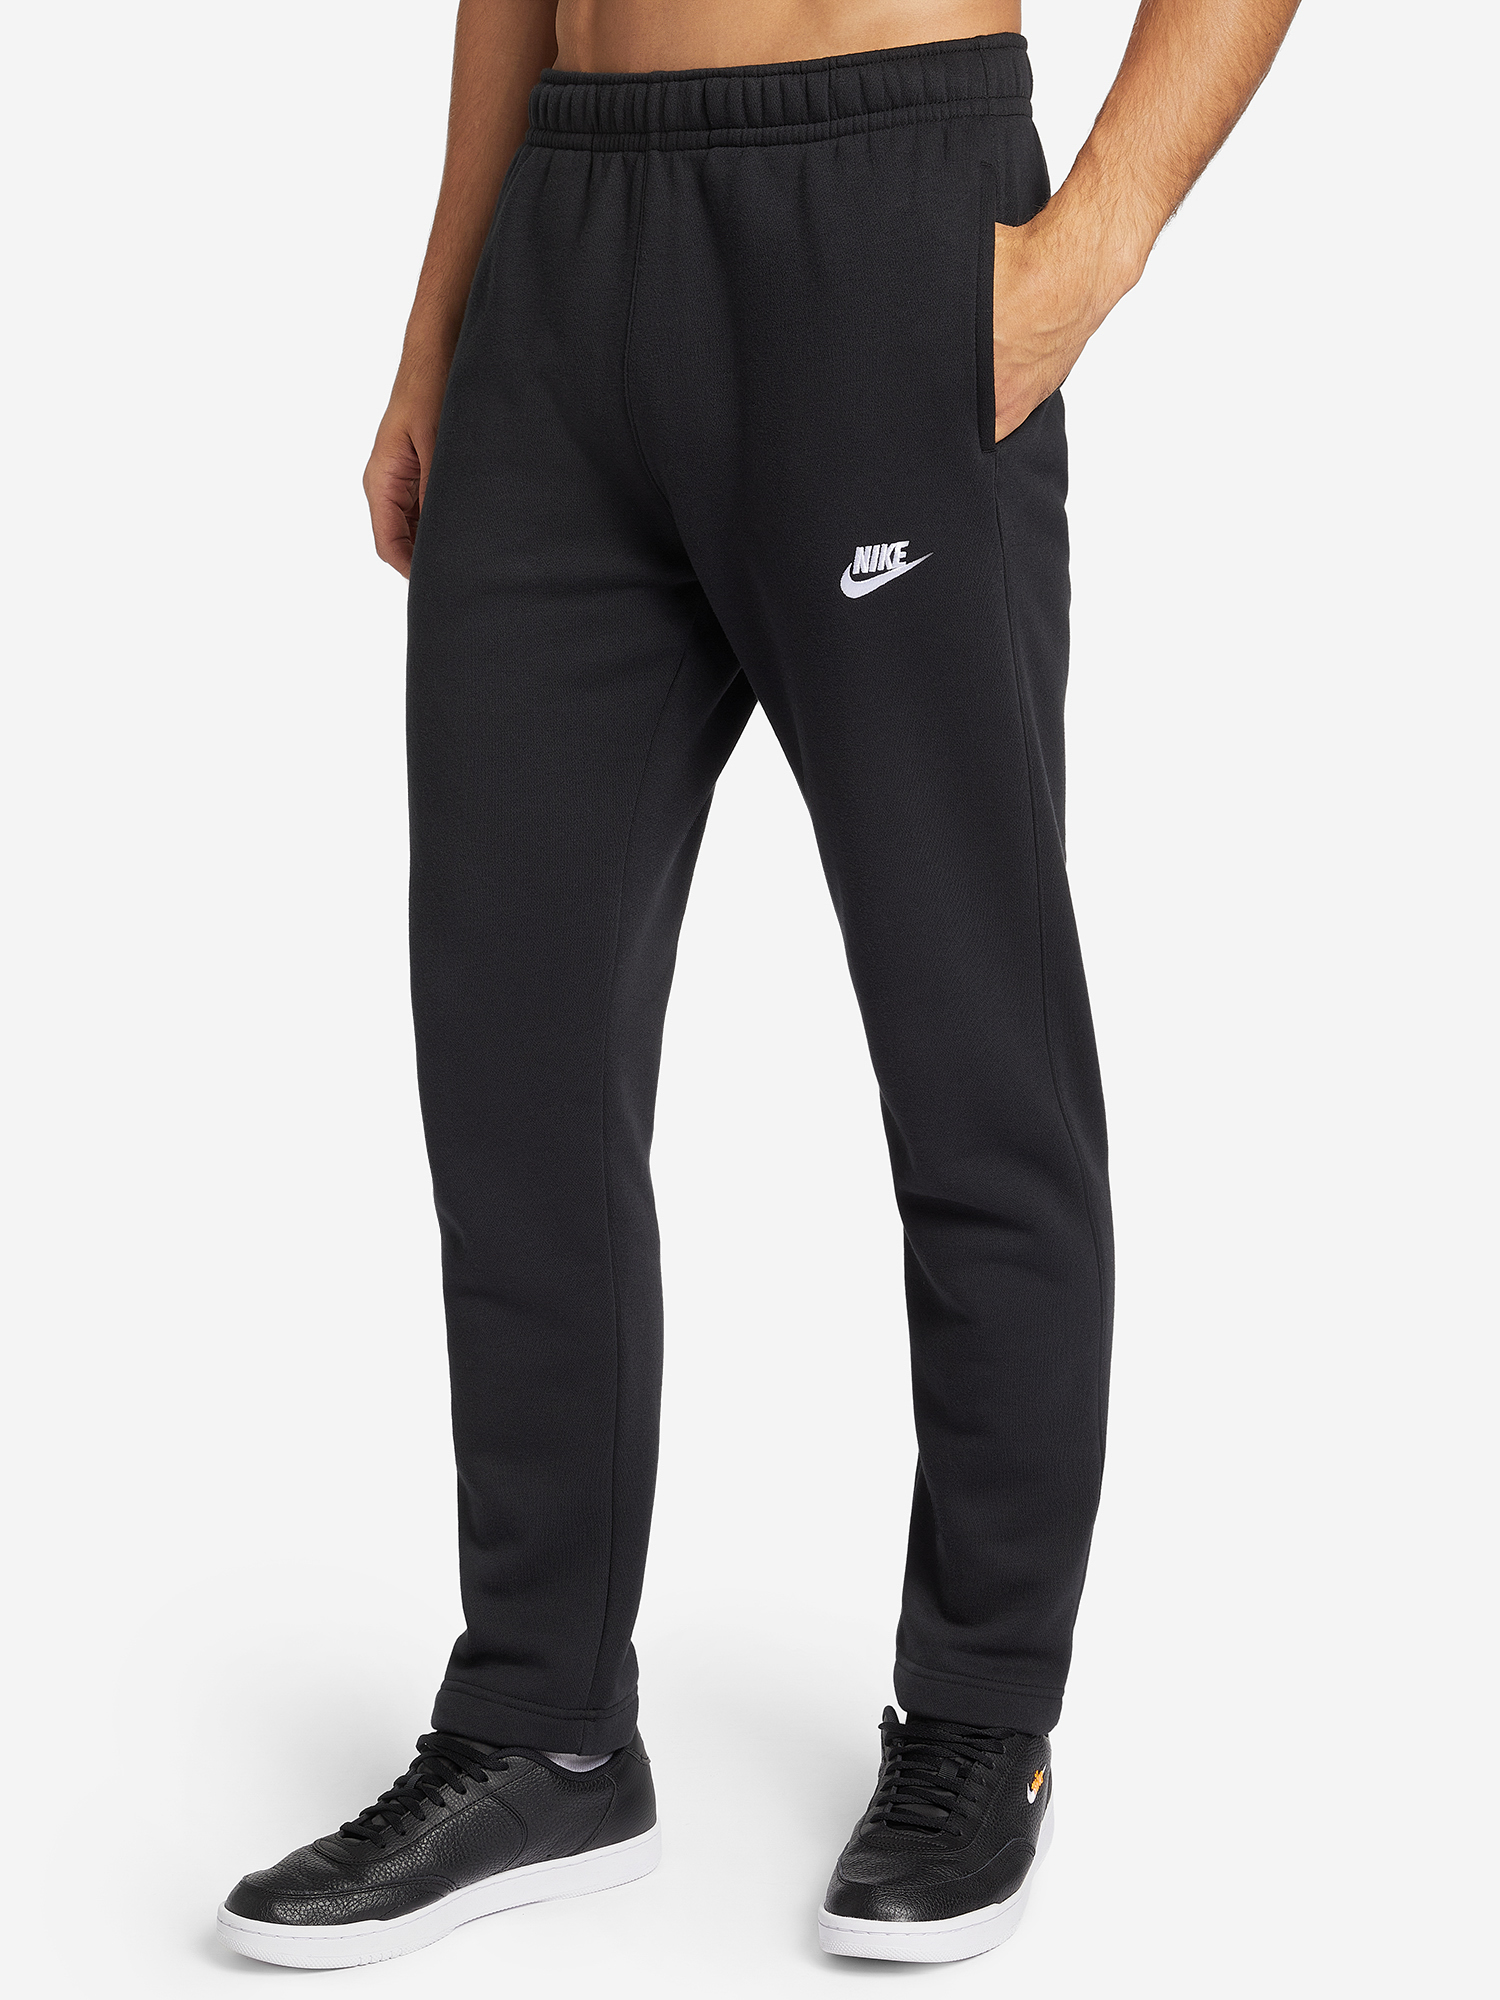 Брюки флисовые мужские Nike Sportswear Club Fleece, Черный брюки мужские nike sportswear club fleece